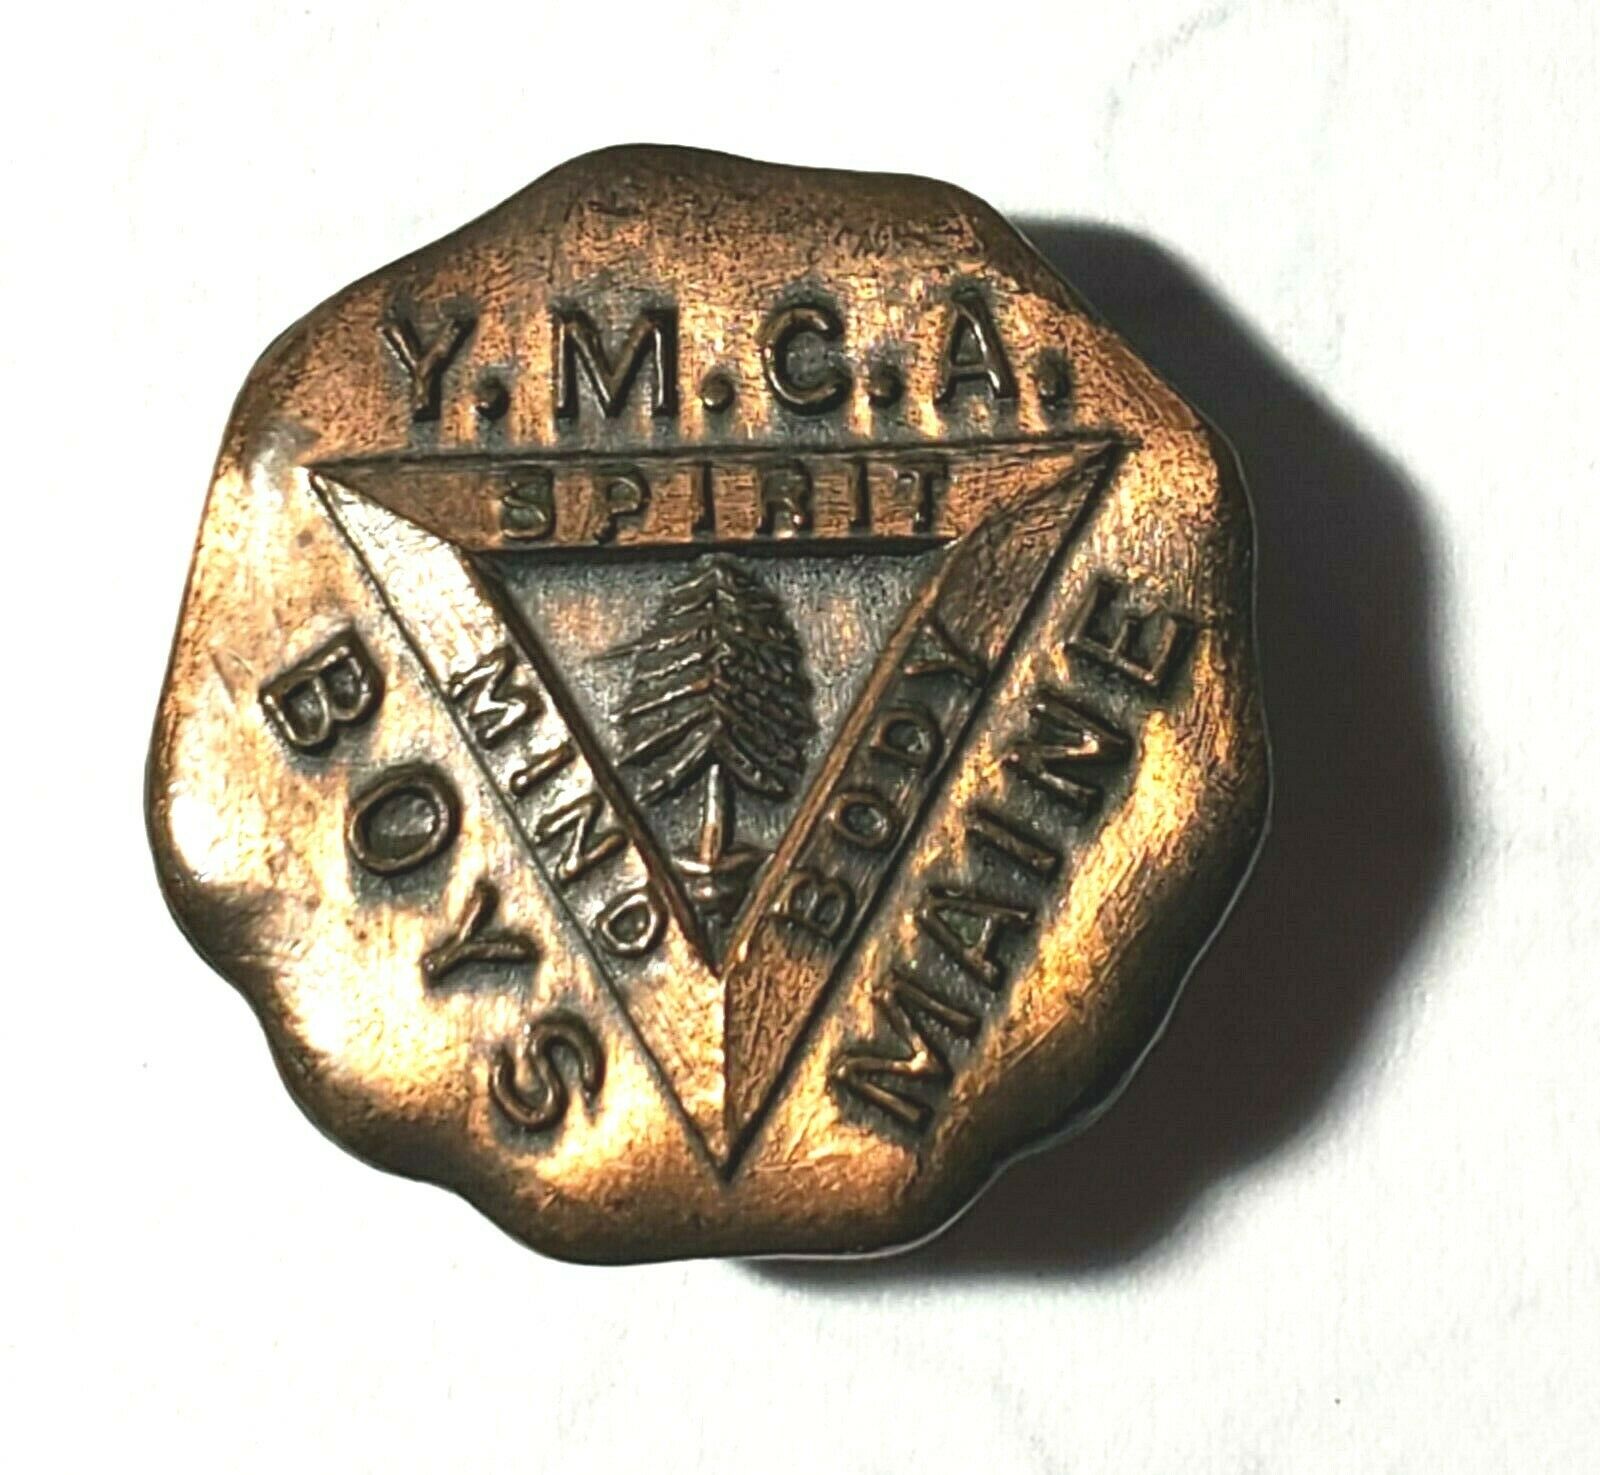 Vintage Maine Boys Ymca Lapel Button